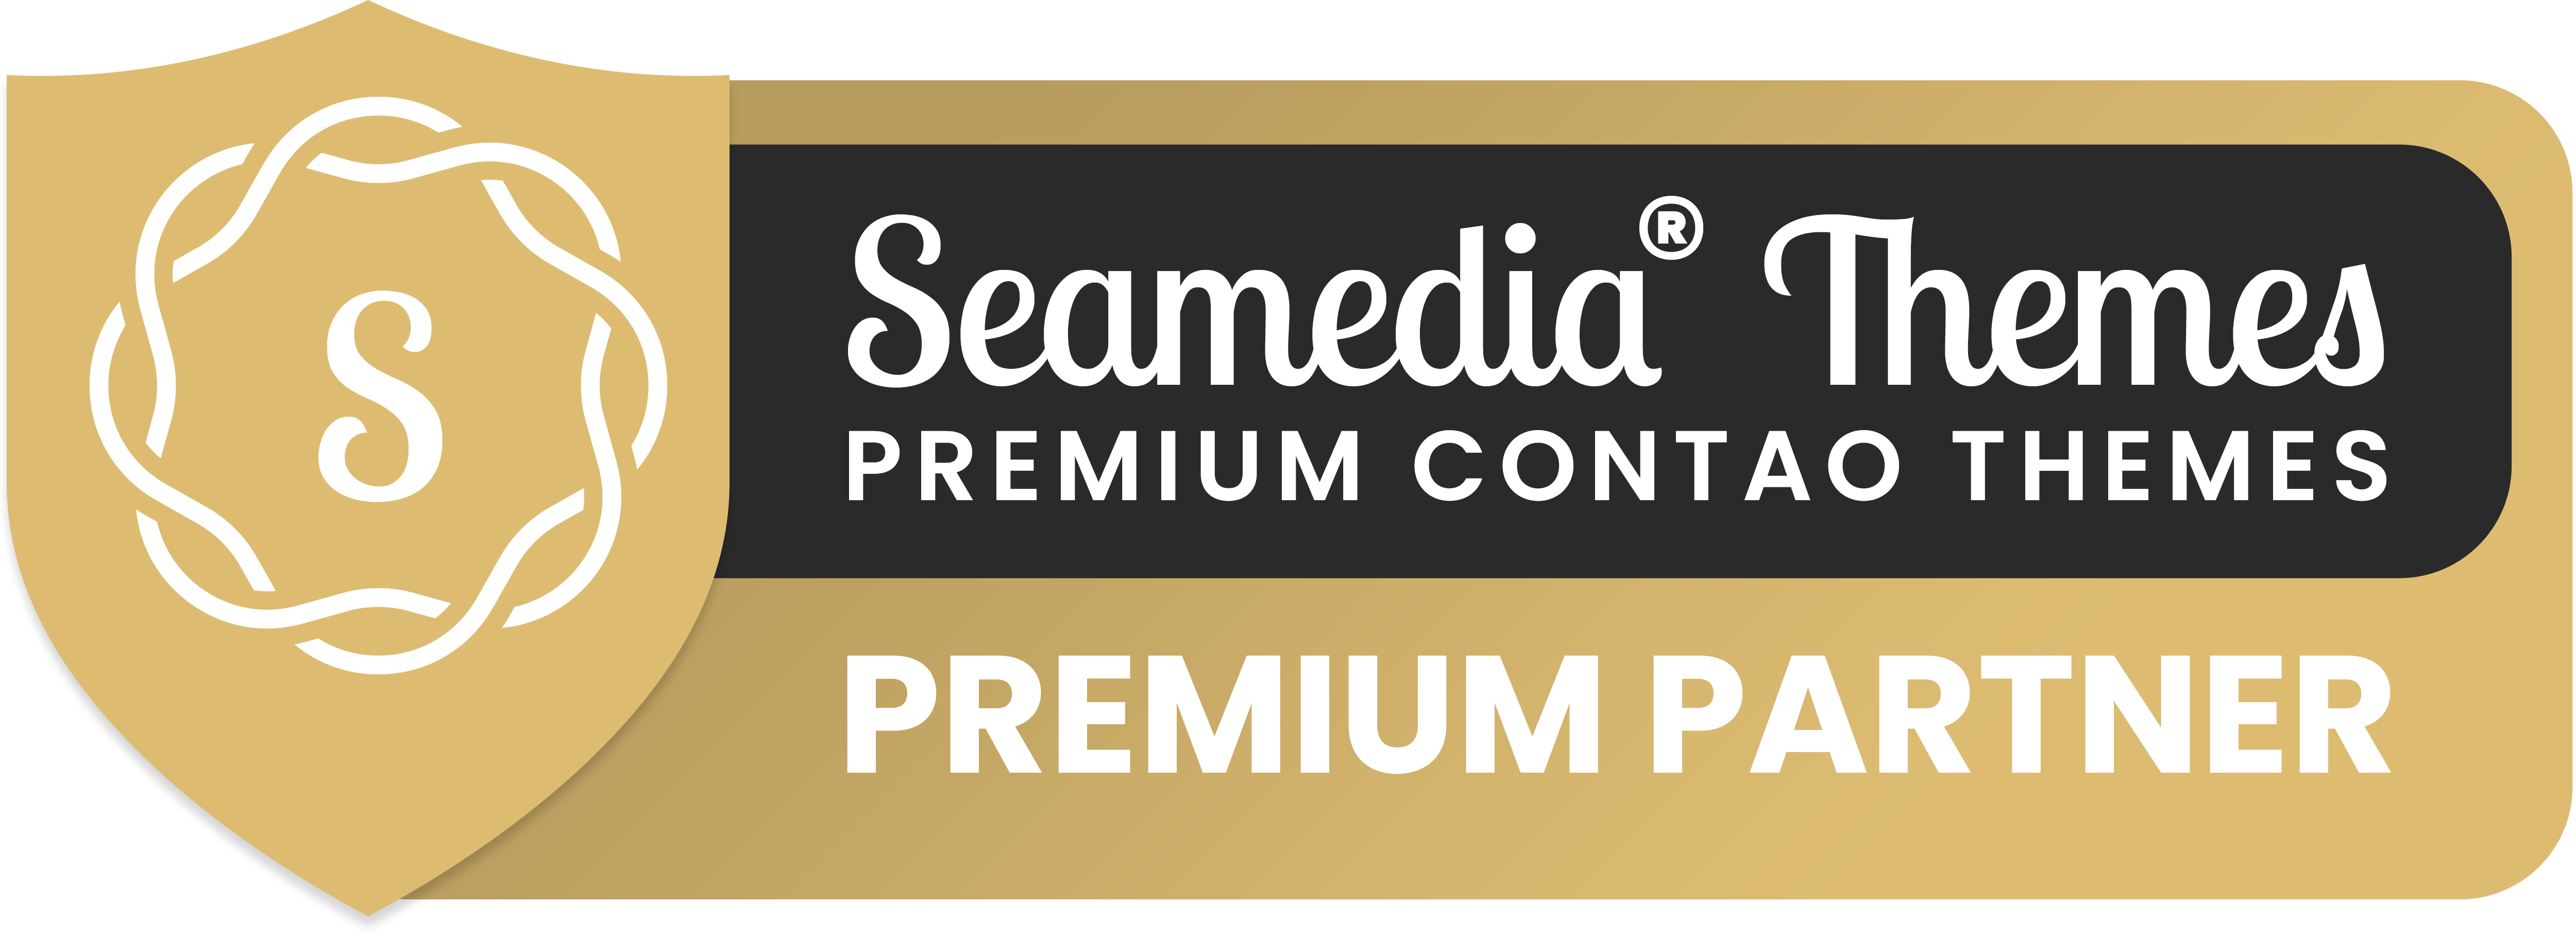 Premium Contao Themes Partner